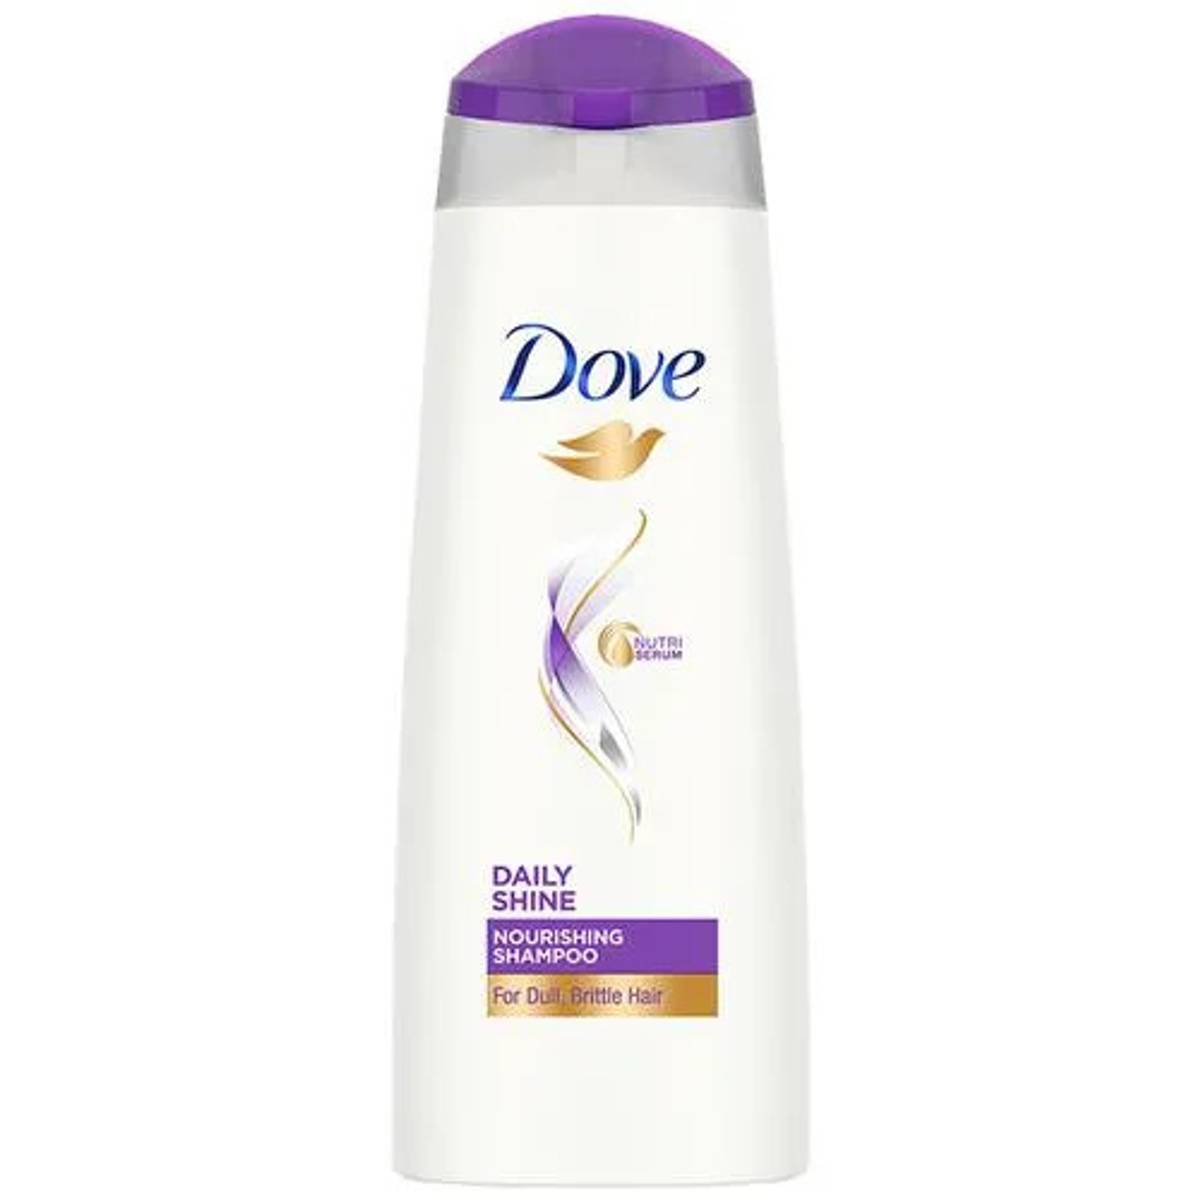 Dove daily shine Nourishing Shampoo 80ml